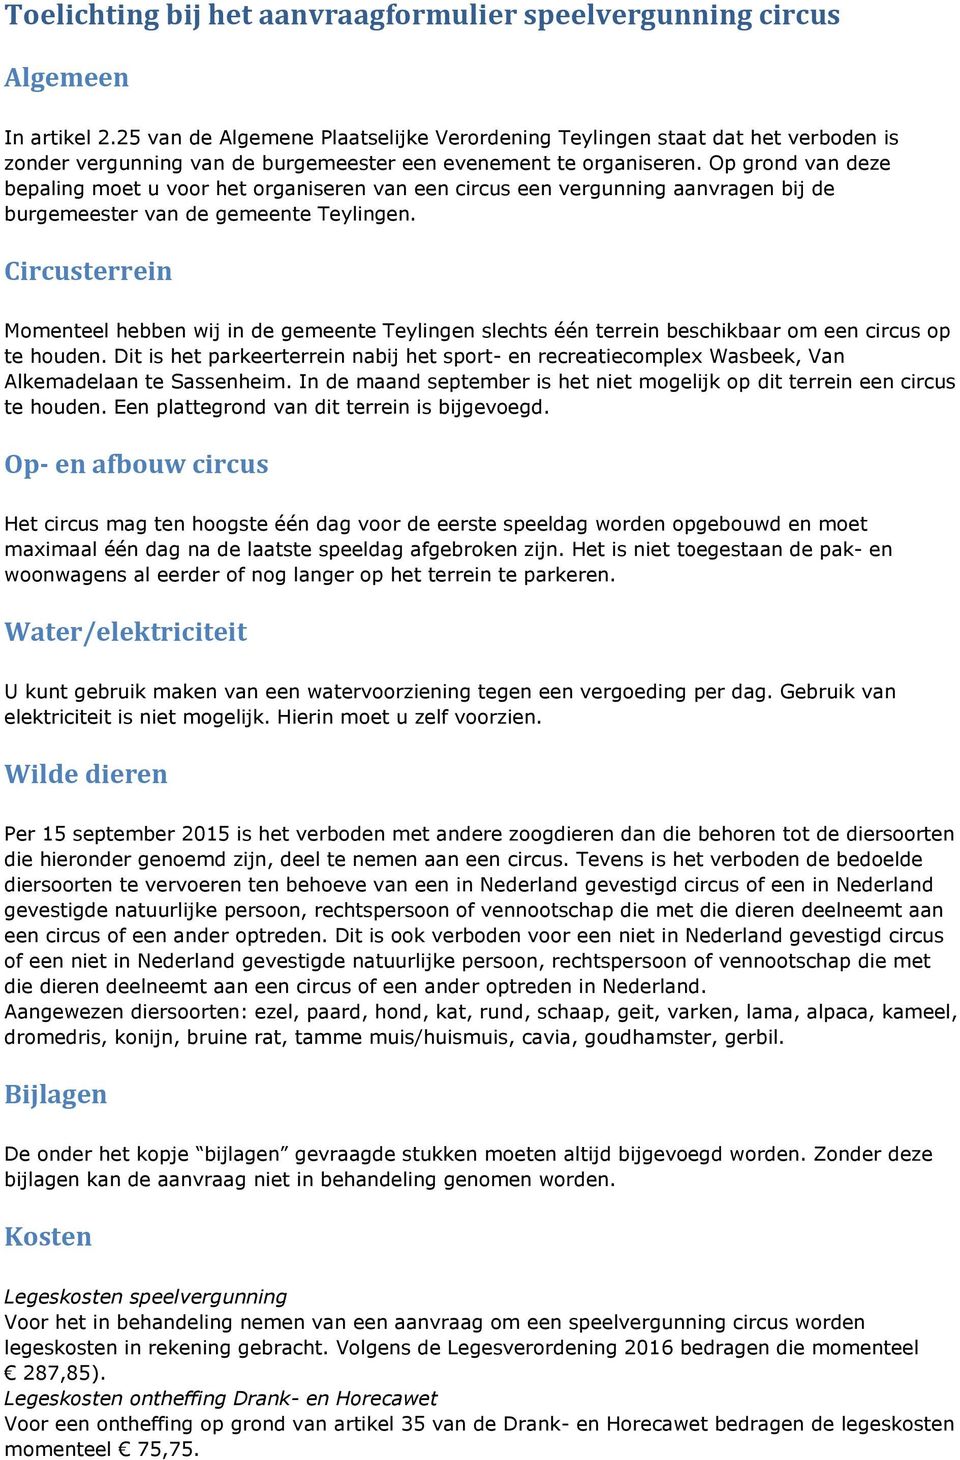 Op grond van deze bepaling moet u voor het organiseren van een circus een vergunning aanvragen bij de burgemeester van de gemeente Teylingen.